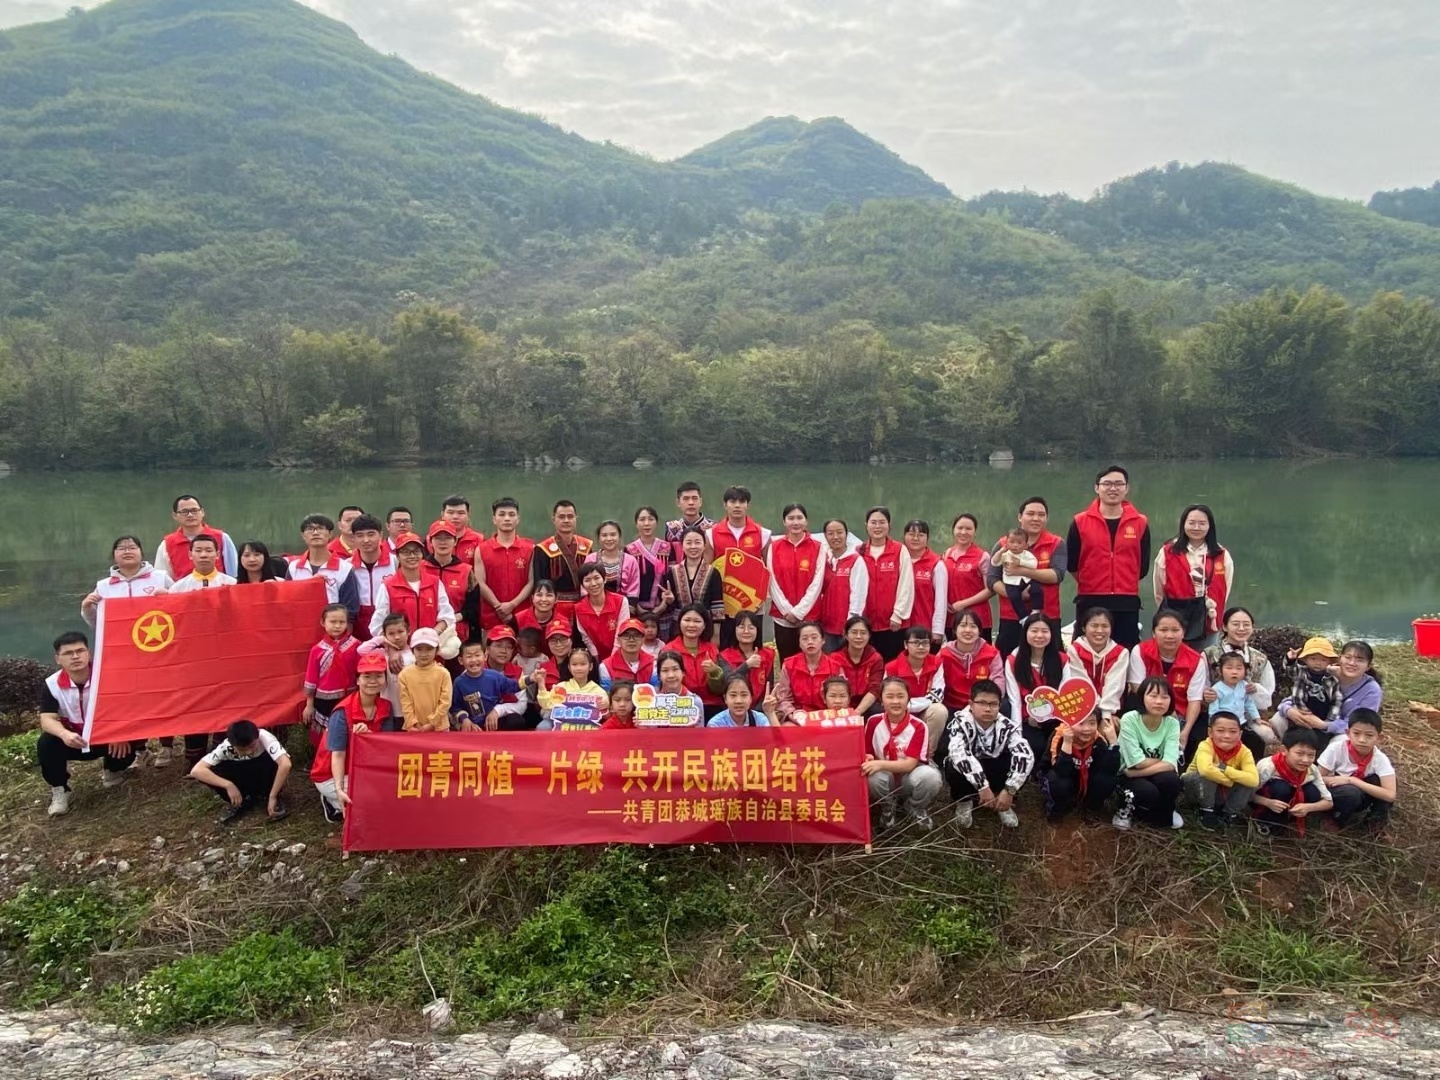 团县委组织青年团员、少数民族代表、青年志愿者植树活动889 / 作者:水墨茶江 / 帖子ID:293557